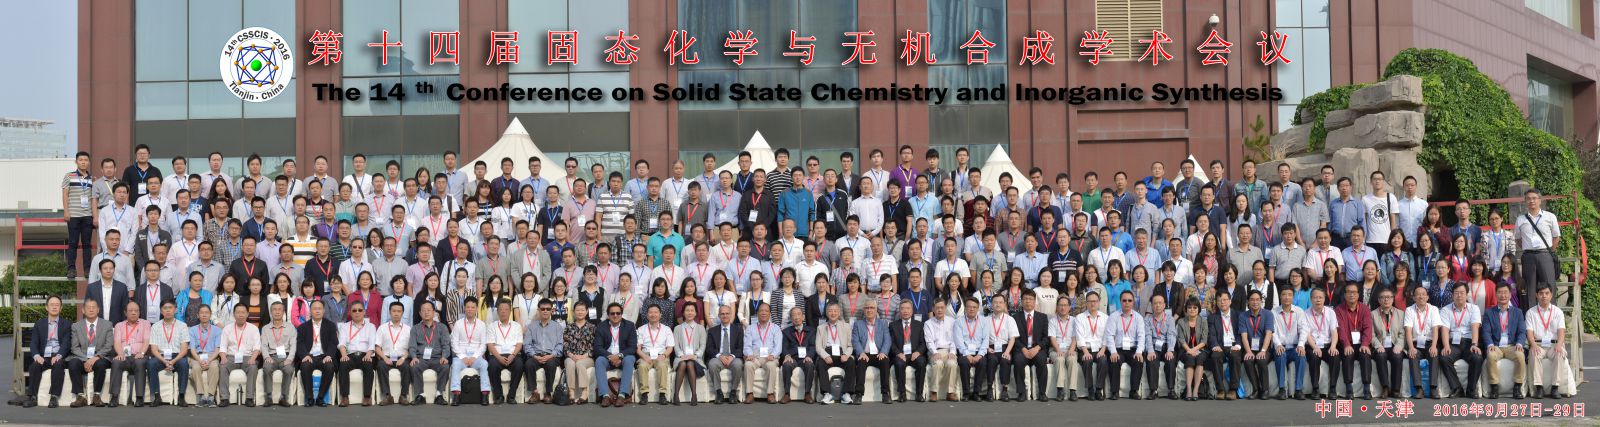 中国化学会"第十六届固态化学与无机合成学术会议”